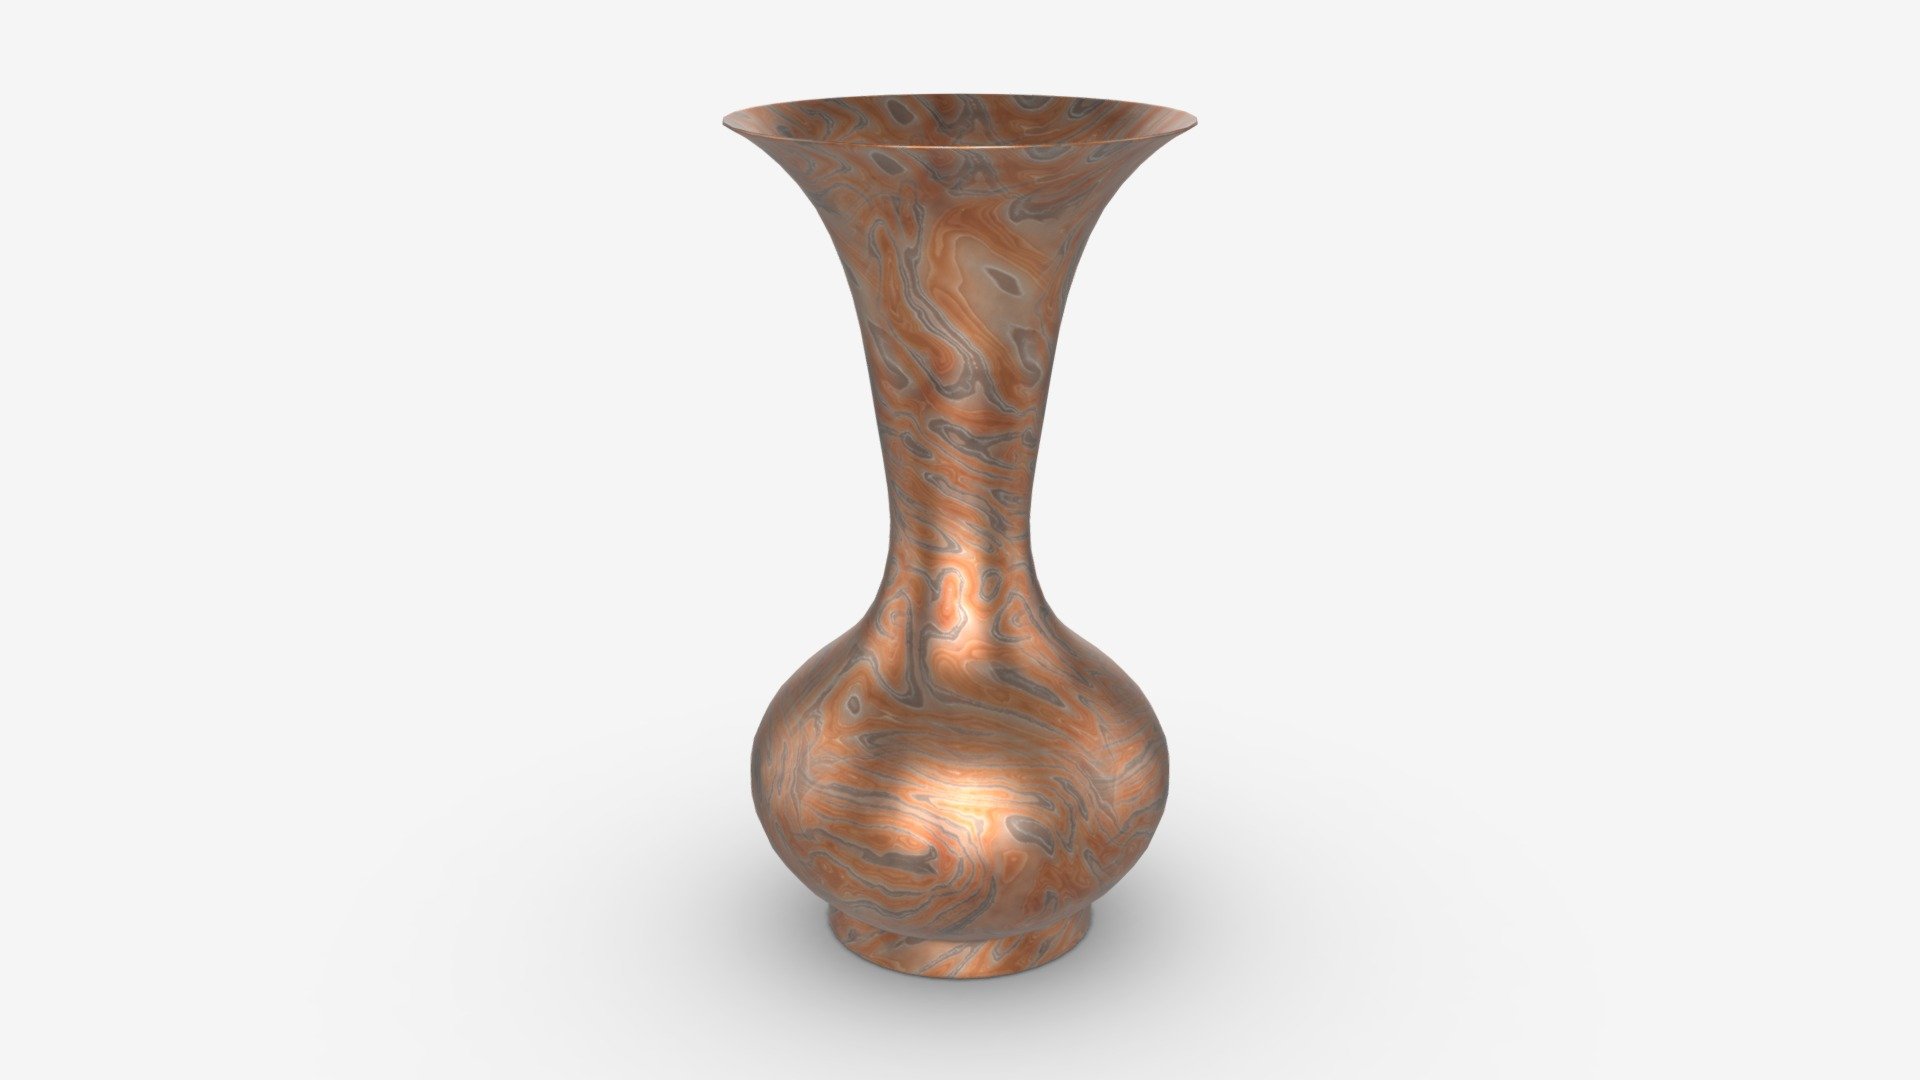 Metal oriental vase 01 - Buy Royalty Free 3D model by HQ3DMOD ...